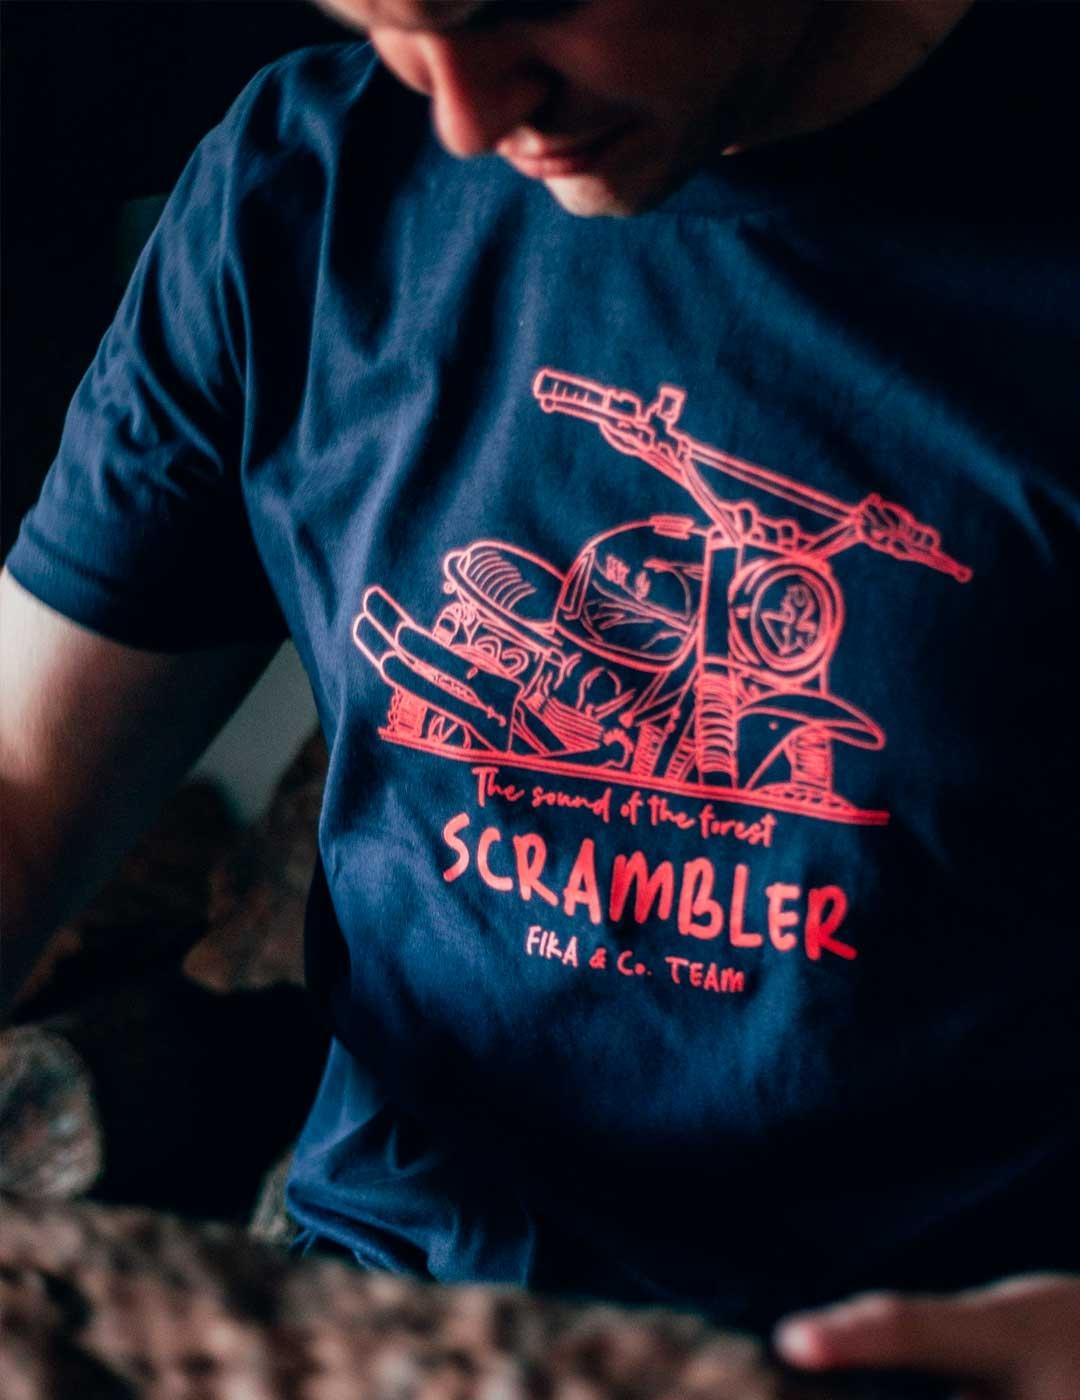 Camiseta Fika Scrambler marina unisex